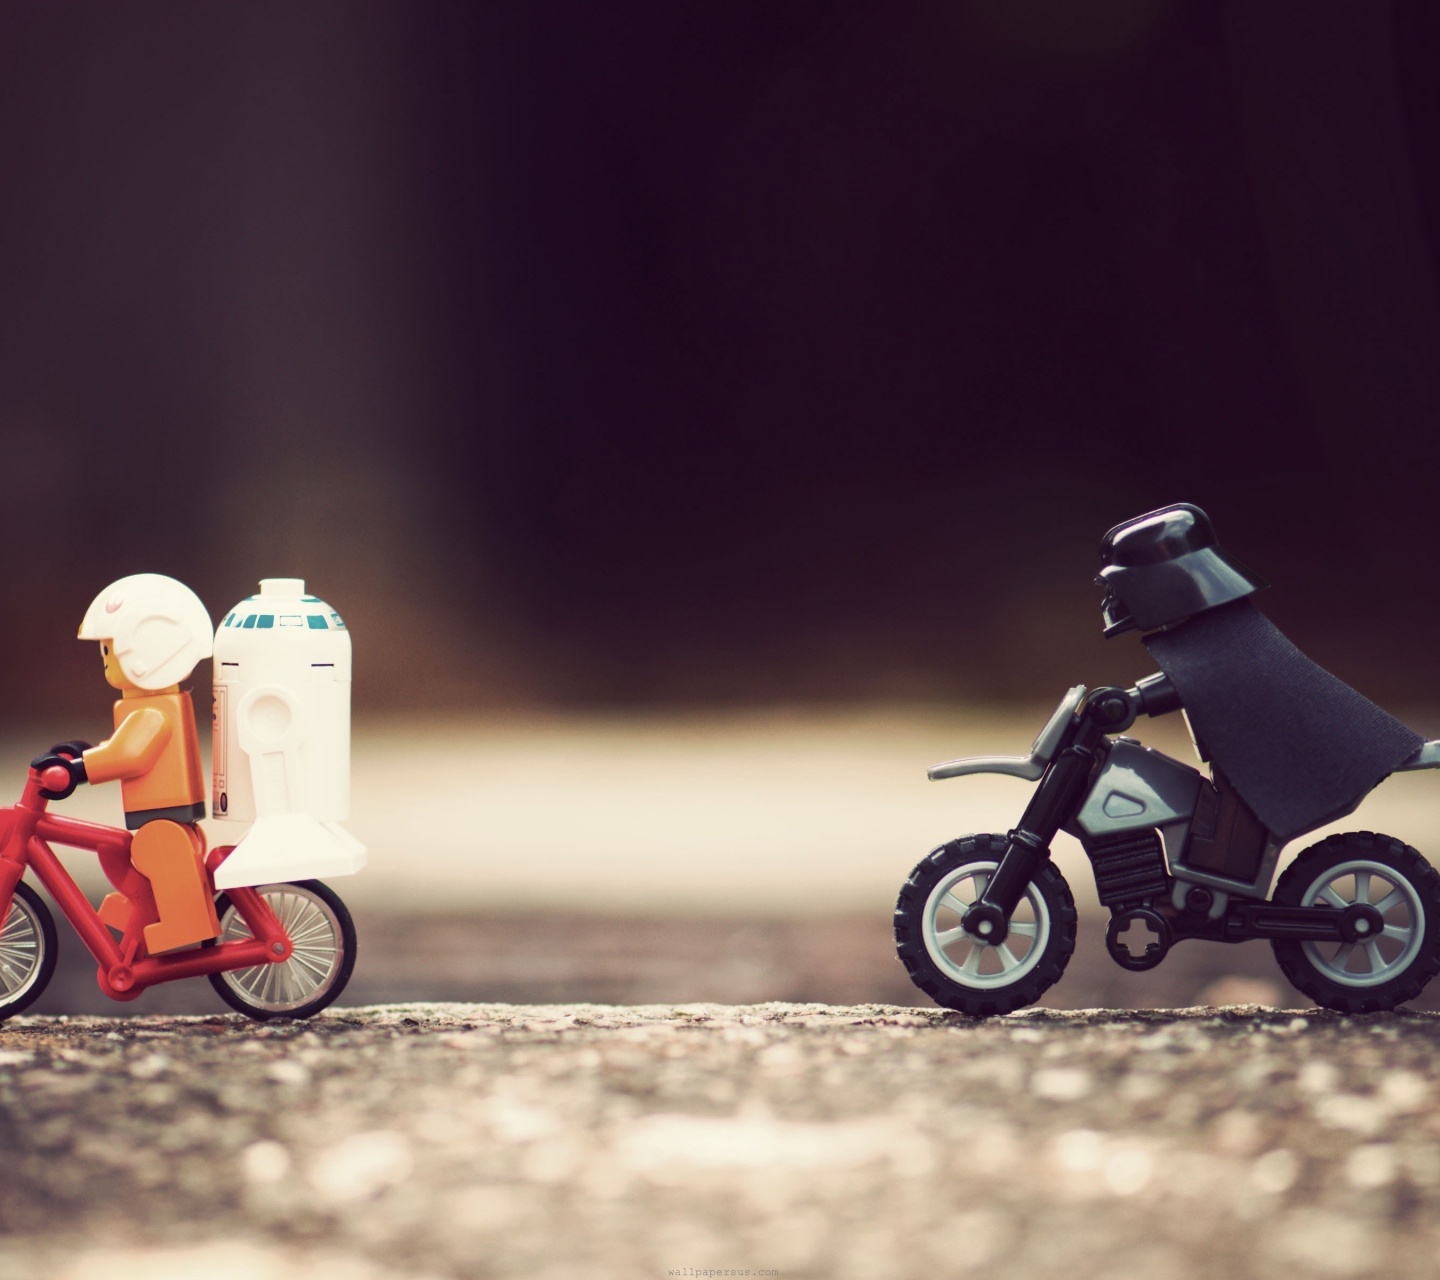 Star Wars Lego Bike Vintage Darth Vader Funny Toys